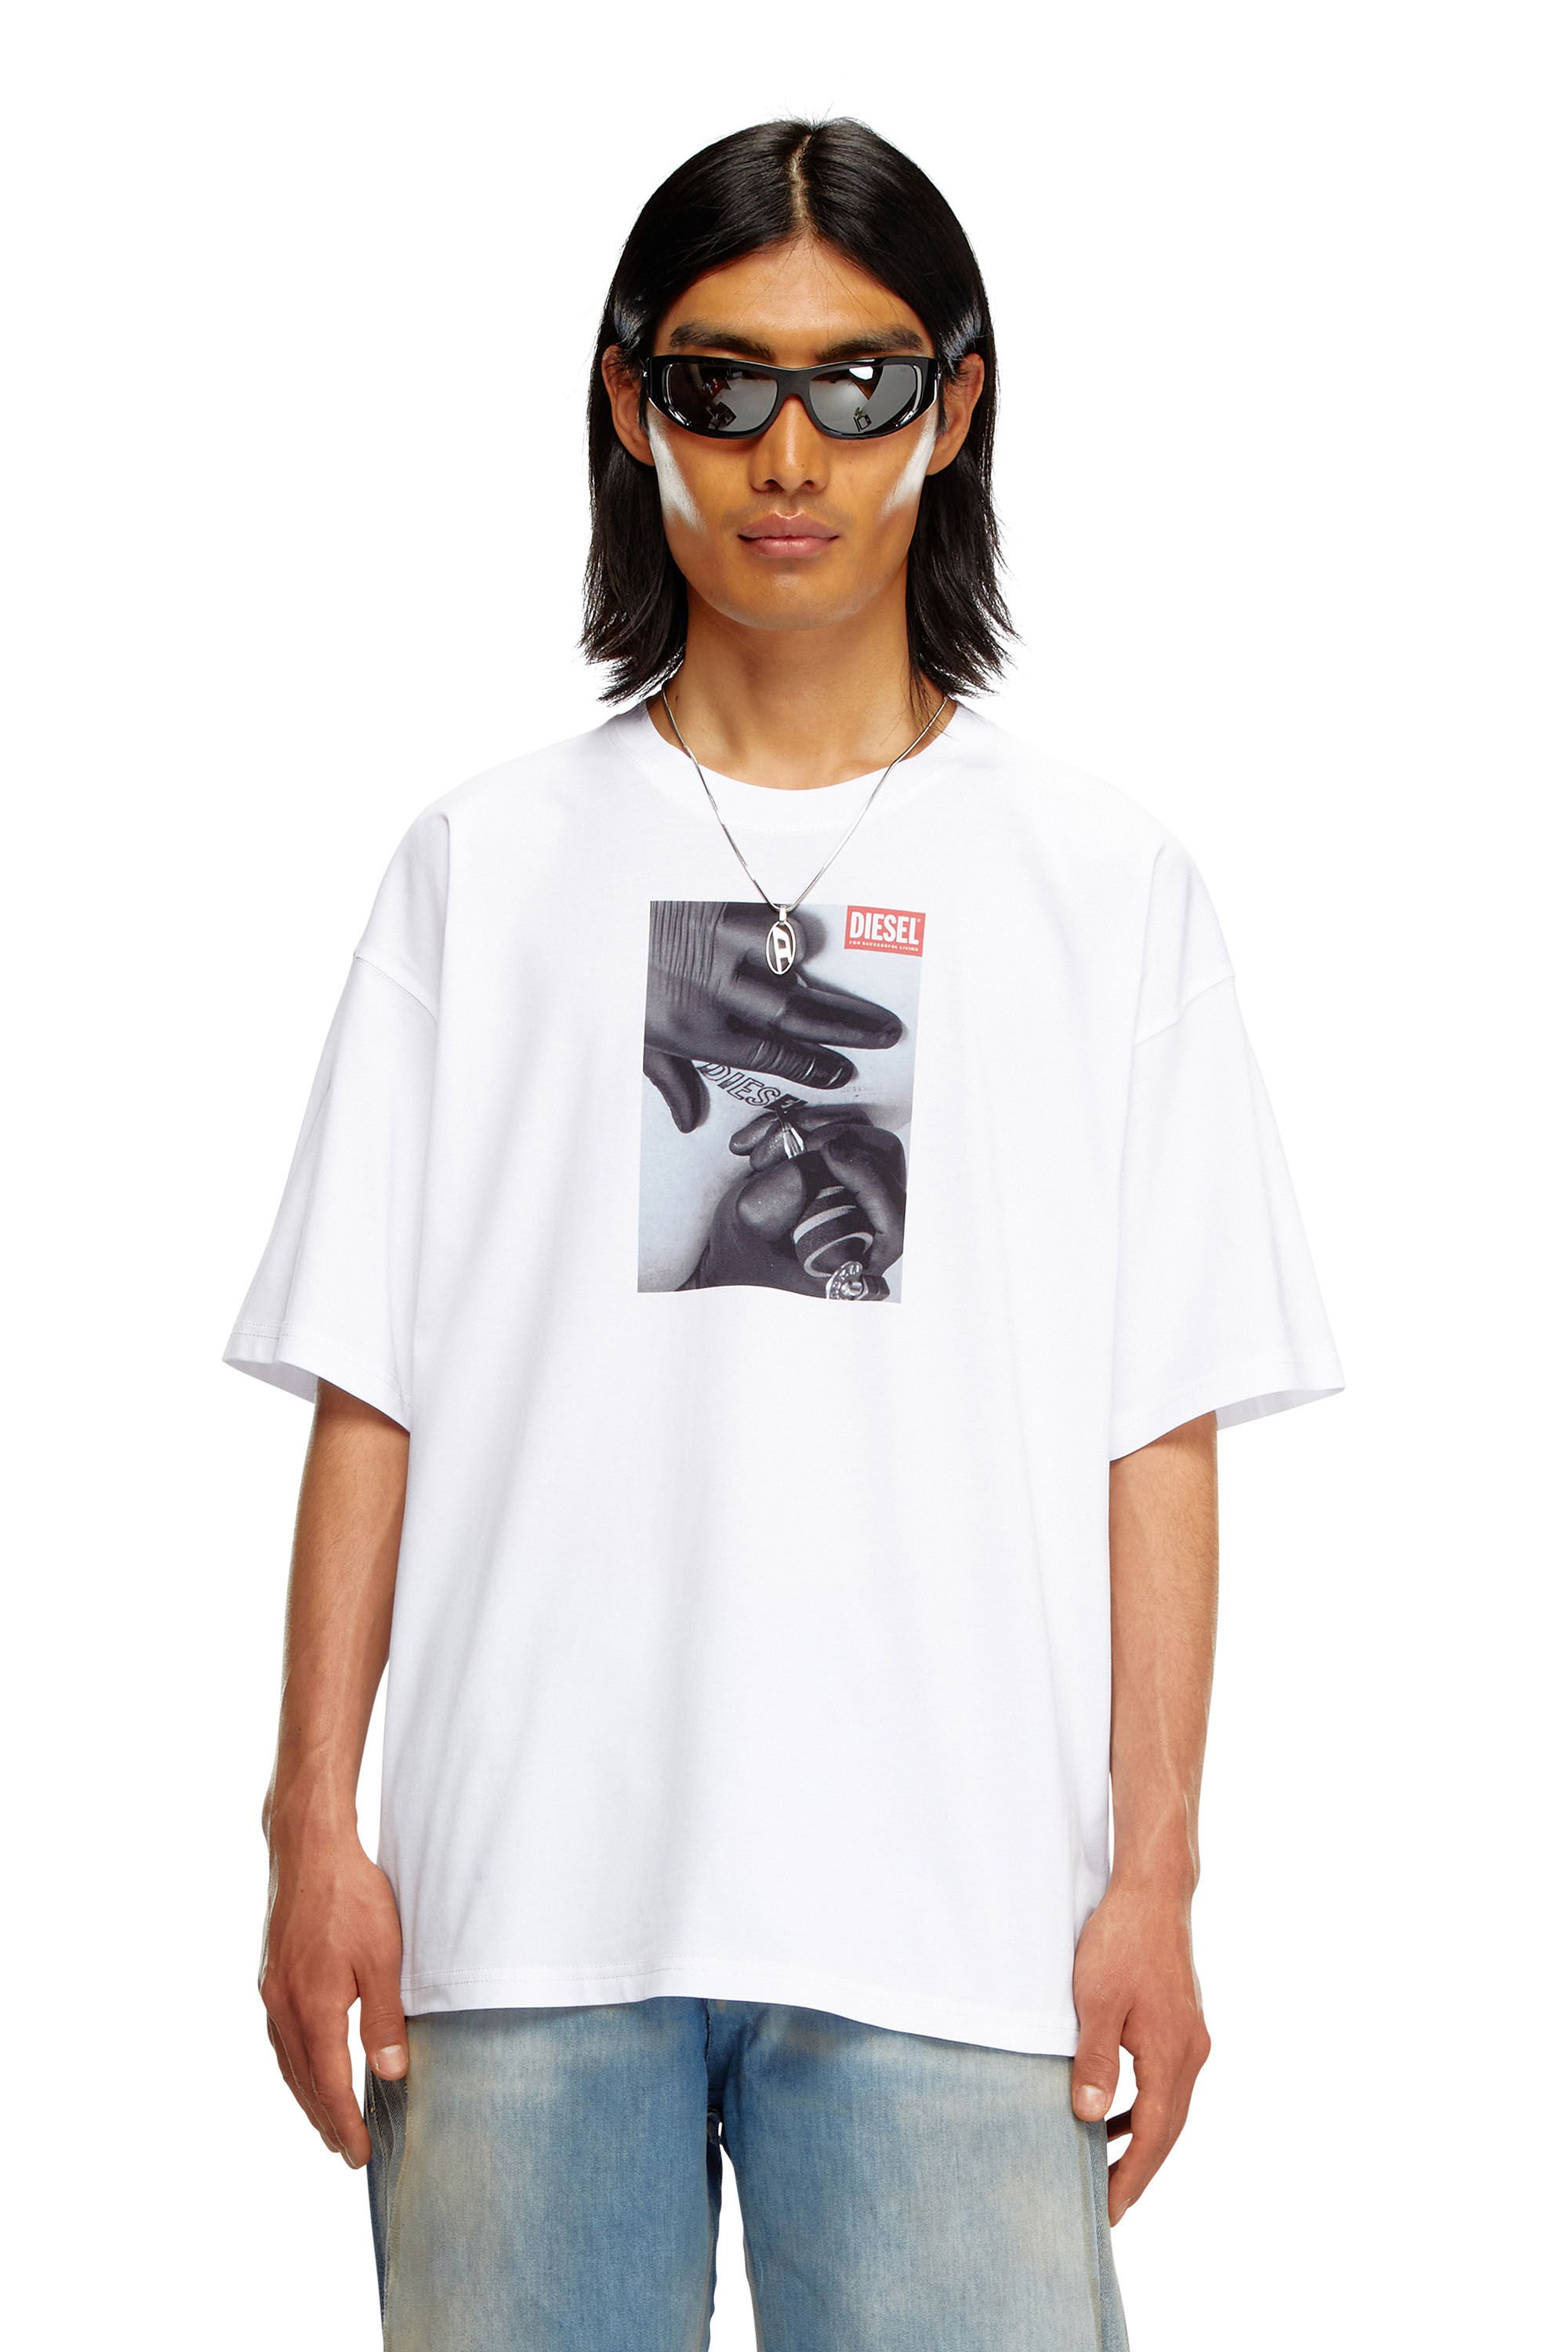 Diesel - T-BOXT-K4, Homme T-shirt avec imprimé tatouage in Blanc - Image 3